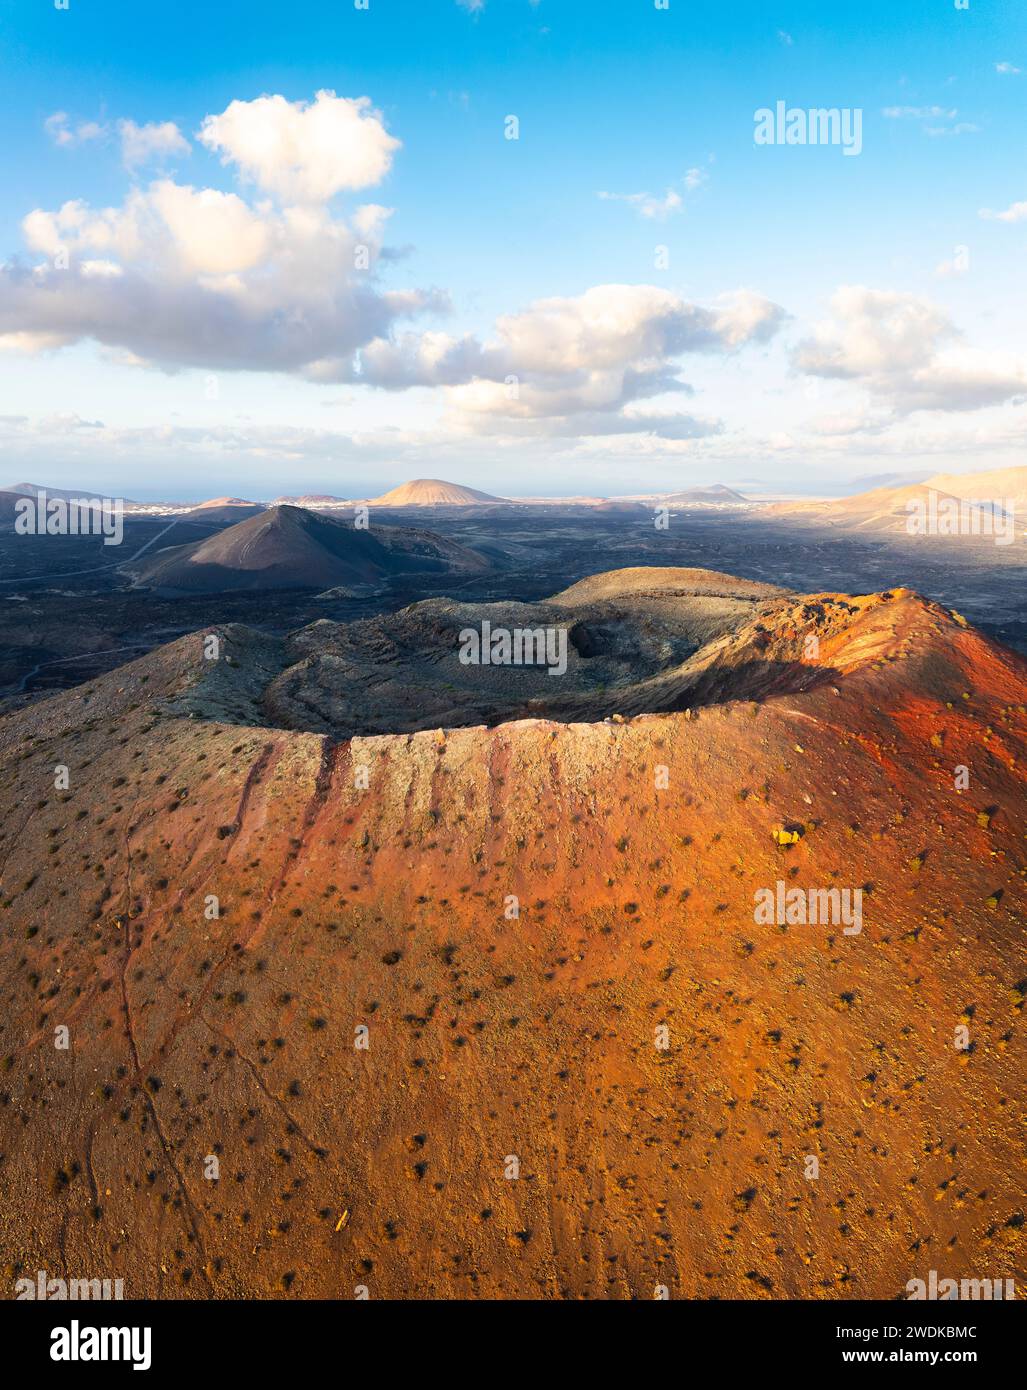 Luftaufnahme des Kraters von Caldera Colorada und Lavafelder, Tinajo, Las Palmas, Kanarische Inseln, Macaronesien, Spanien, Westeuropa Stockfoto